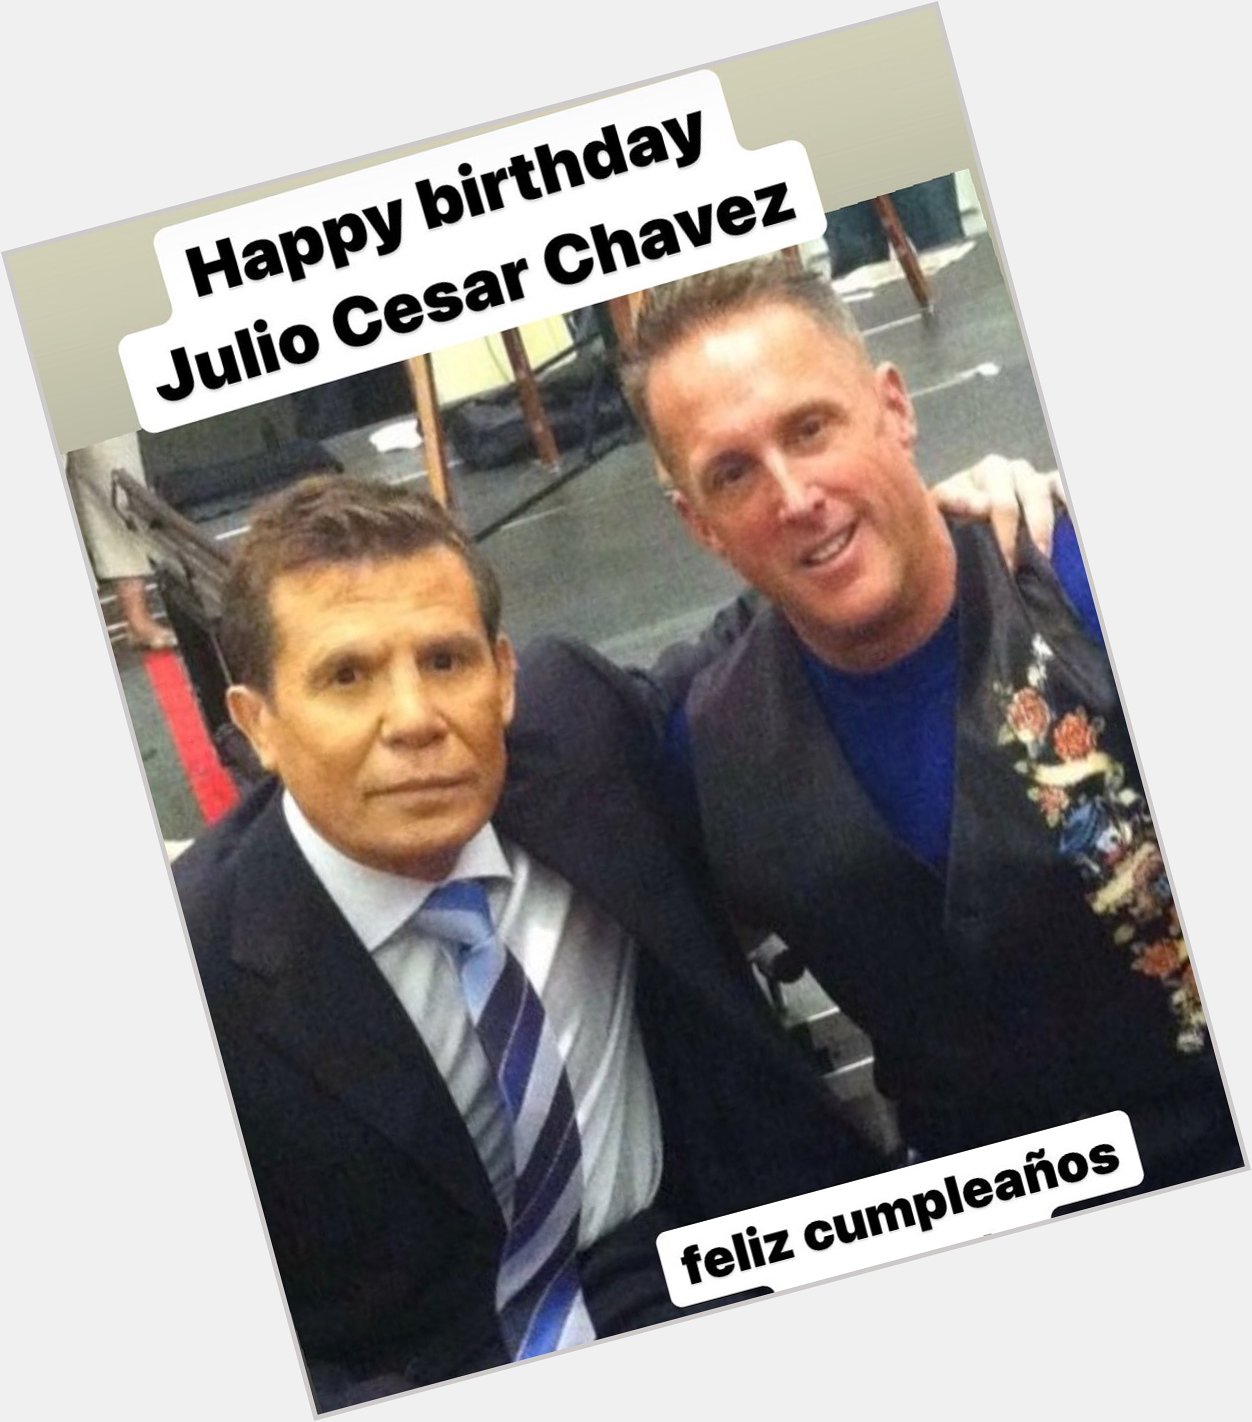 Happy birthday to the legendary Julio Cesar Chavez. 